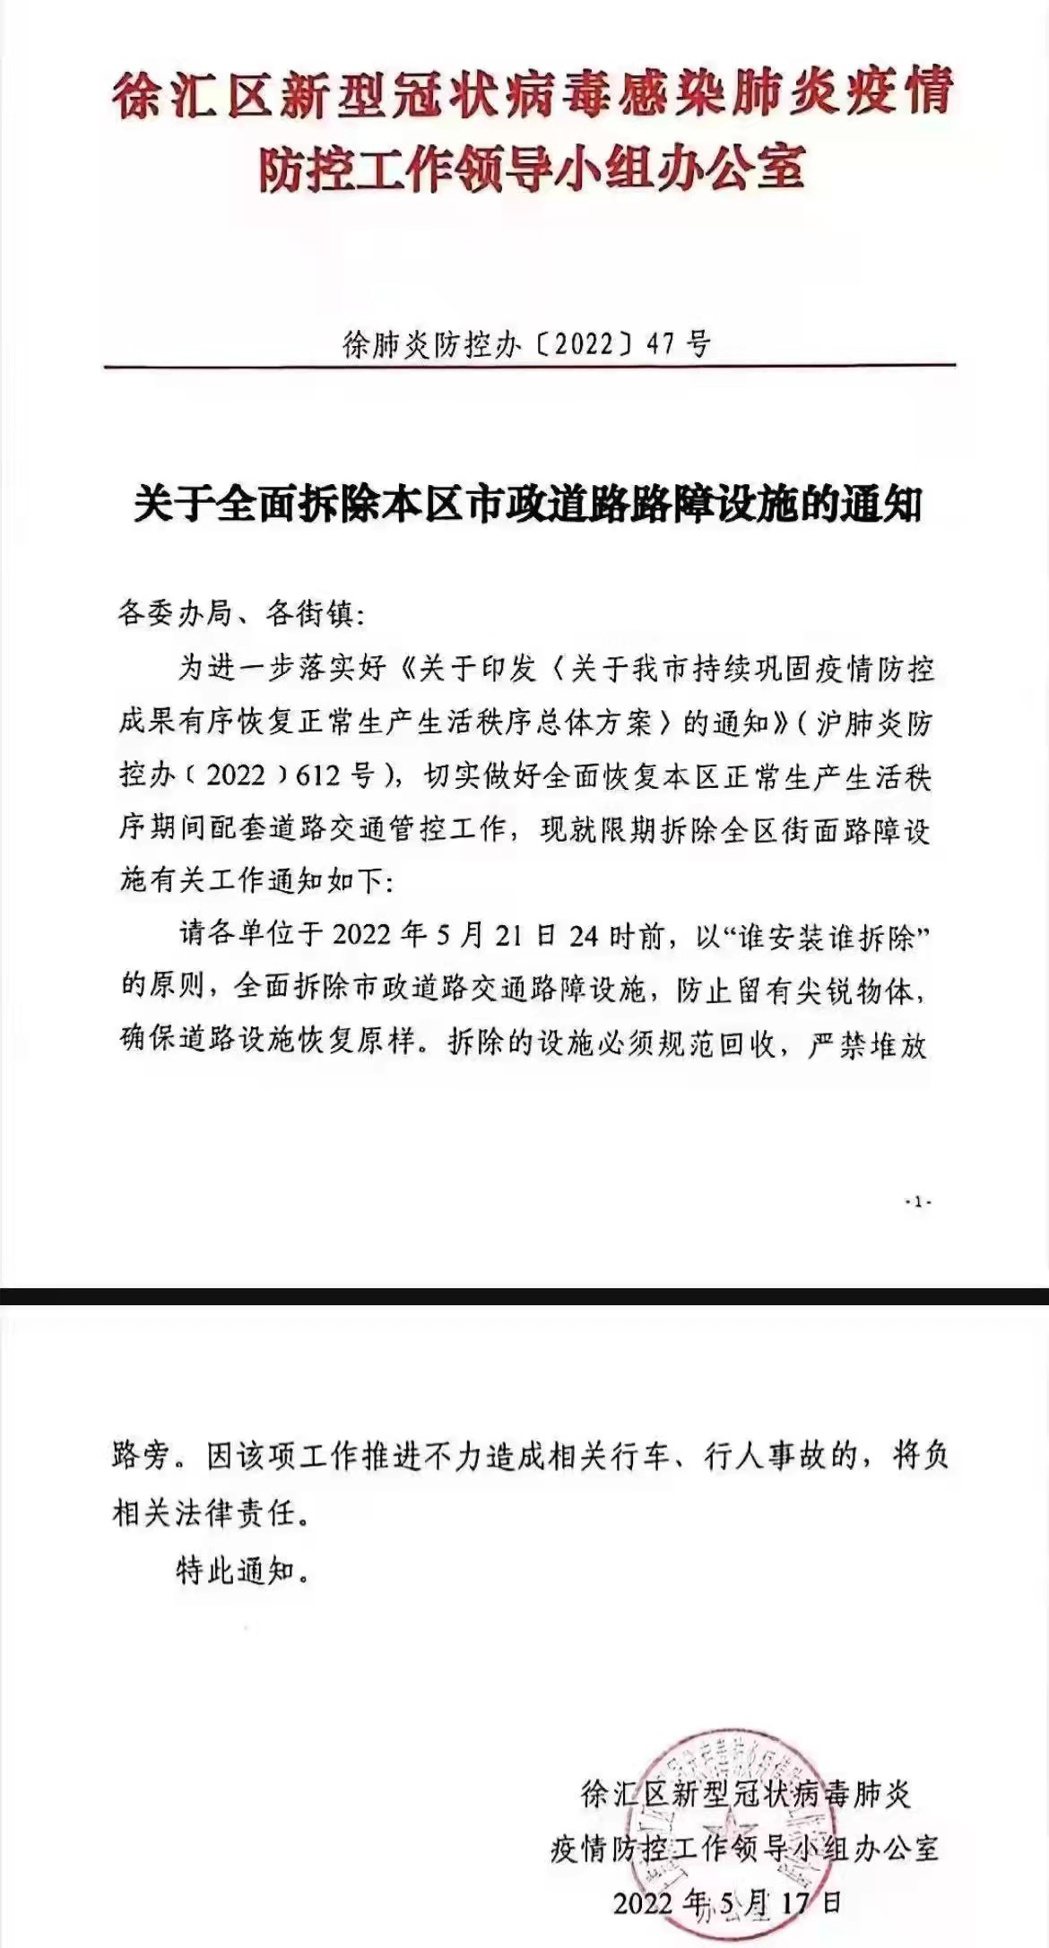 上海市徐匯區發布通知，於21日24時前，全面拆除市政道路交通路障设施。居民提供